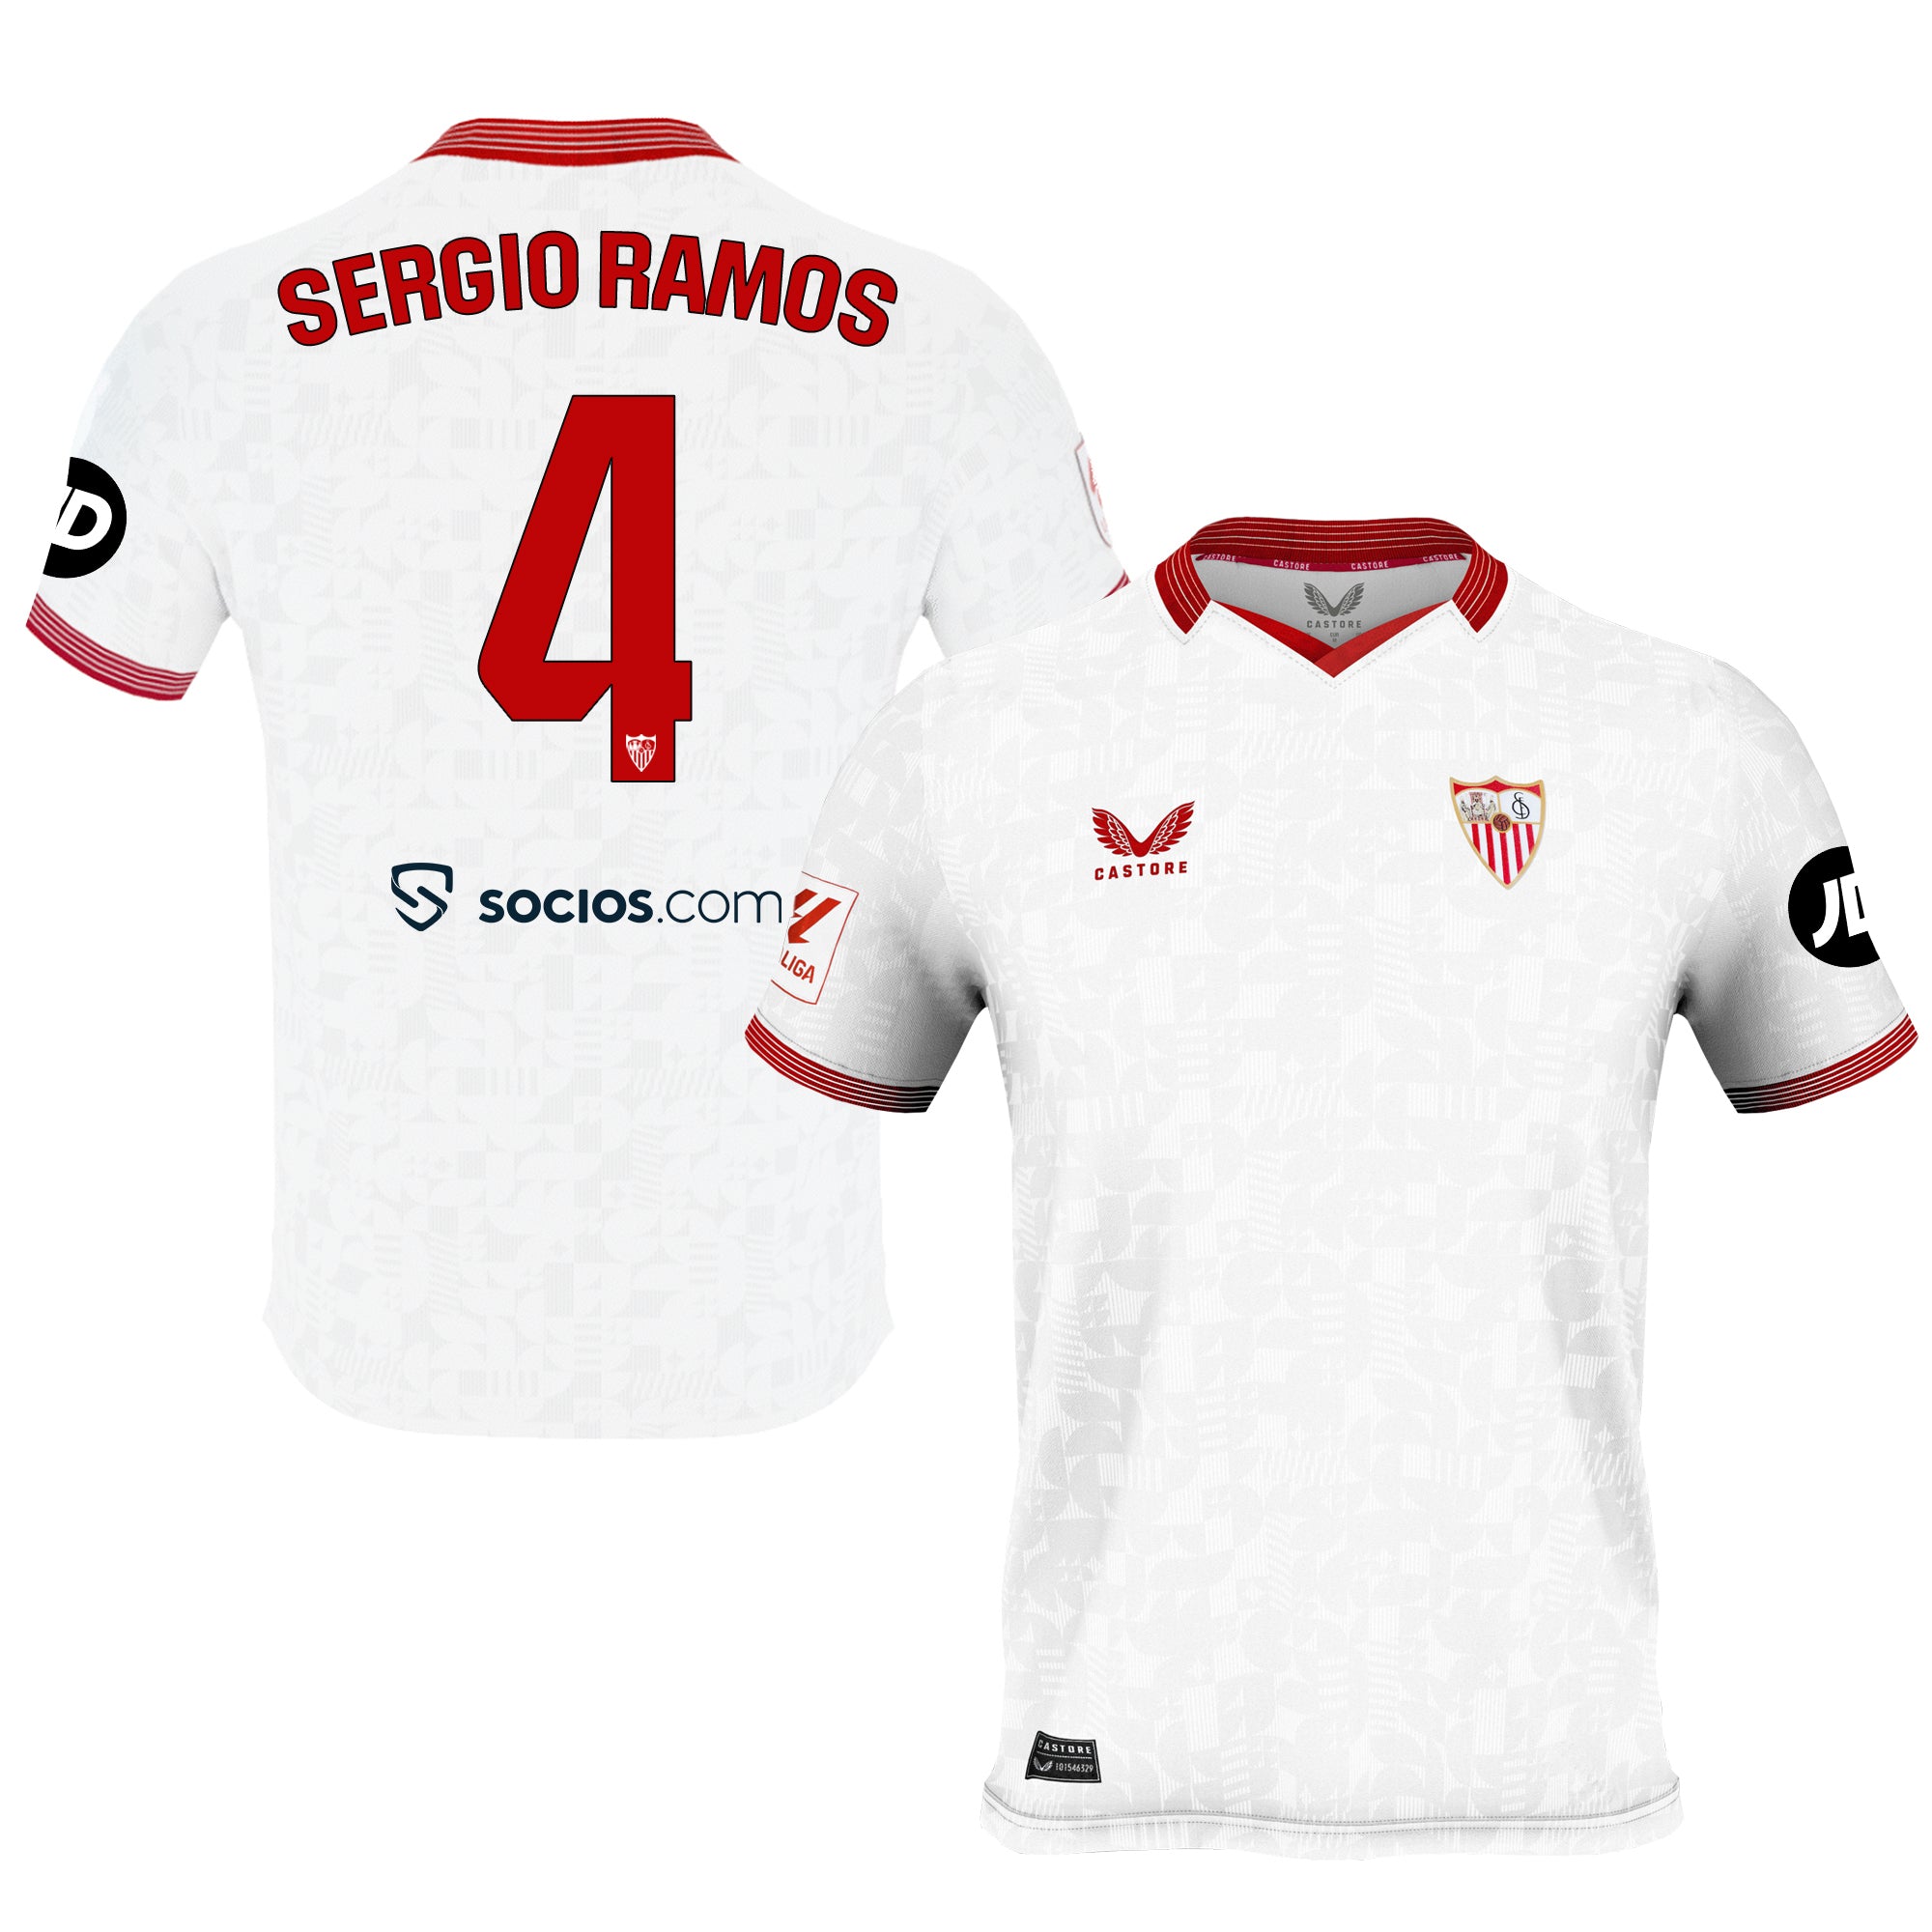 Camiseta 1ª Sevilla FC 23/24 Dorsal 4 y serigrafía Sergio Ramos hombre